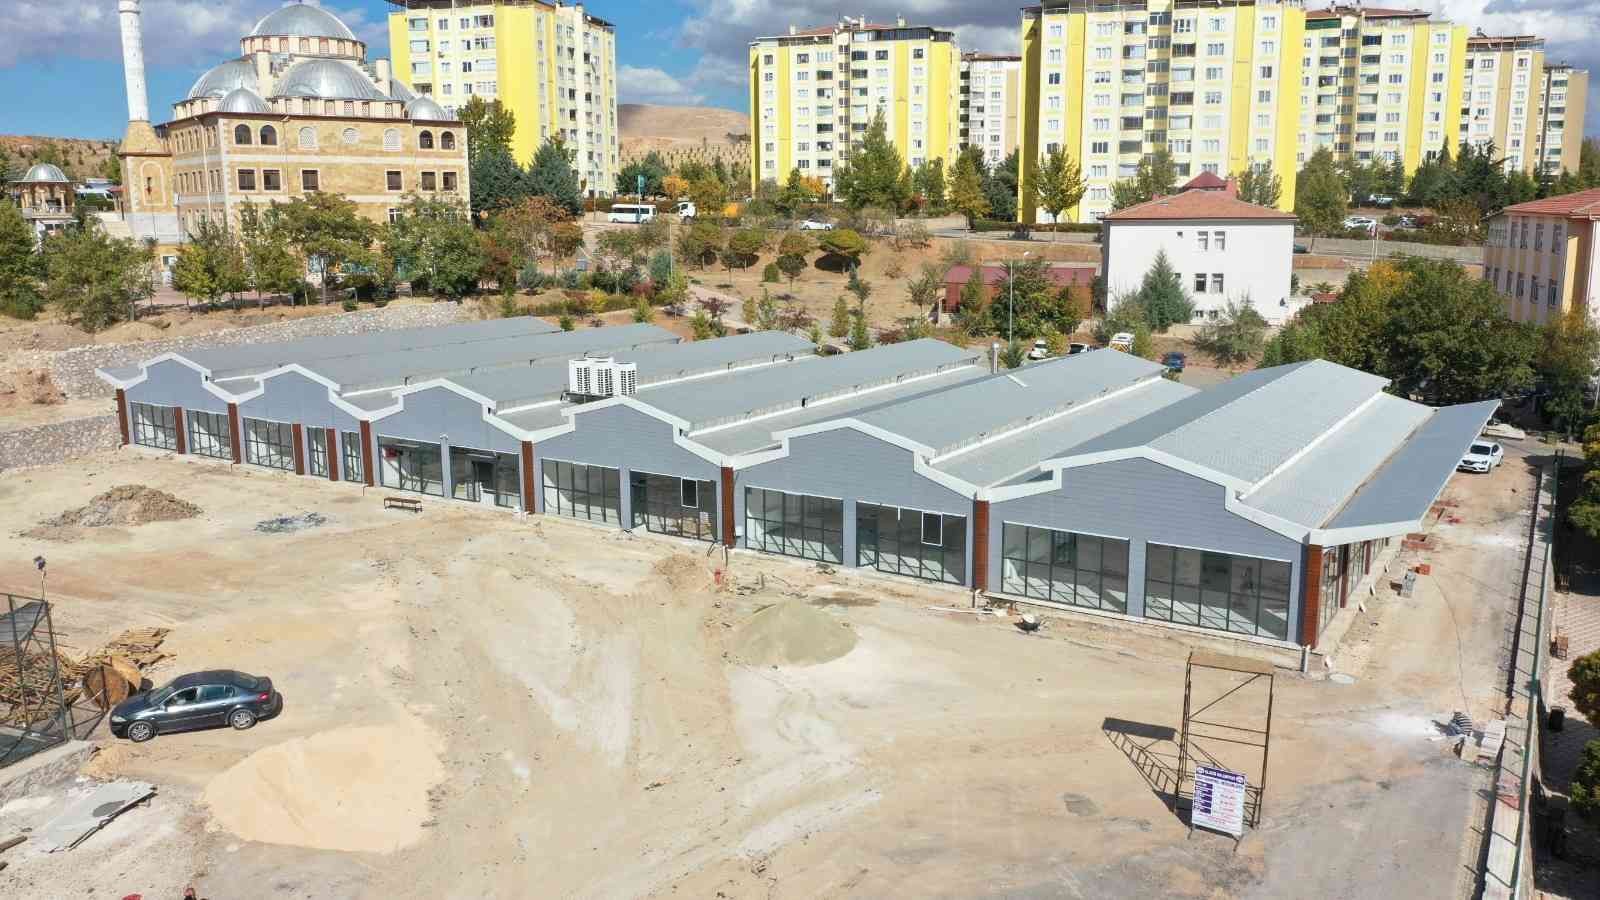 Elazığ’da Sosyal Hizmet Binası Projesinde sona gelindi #elazig